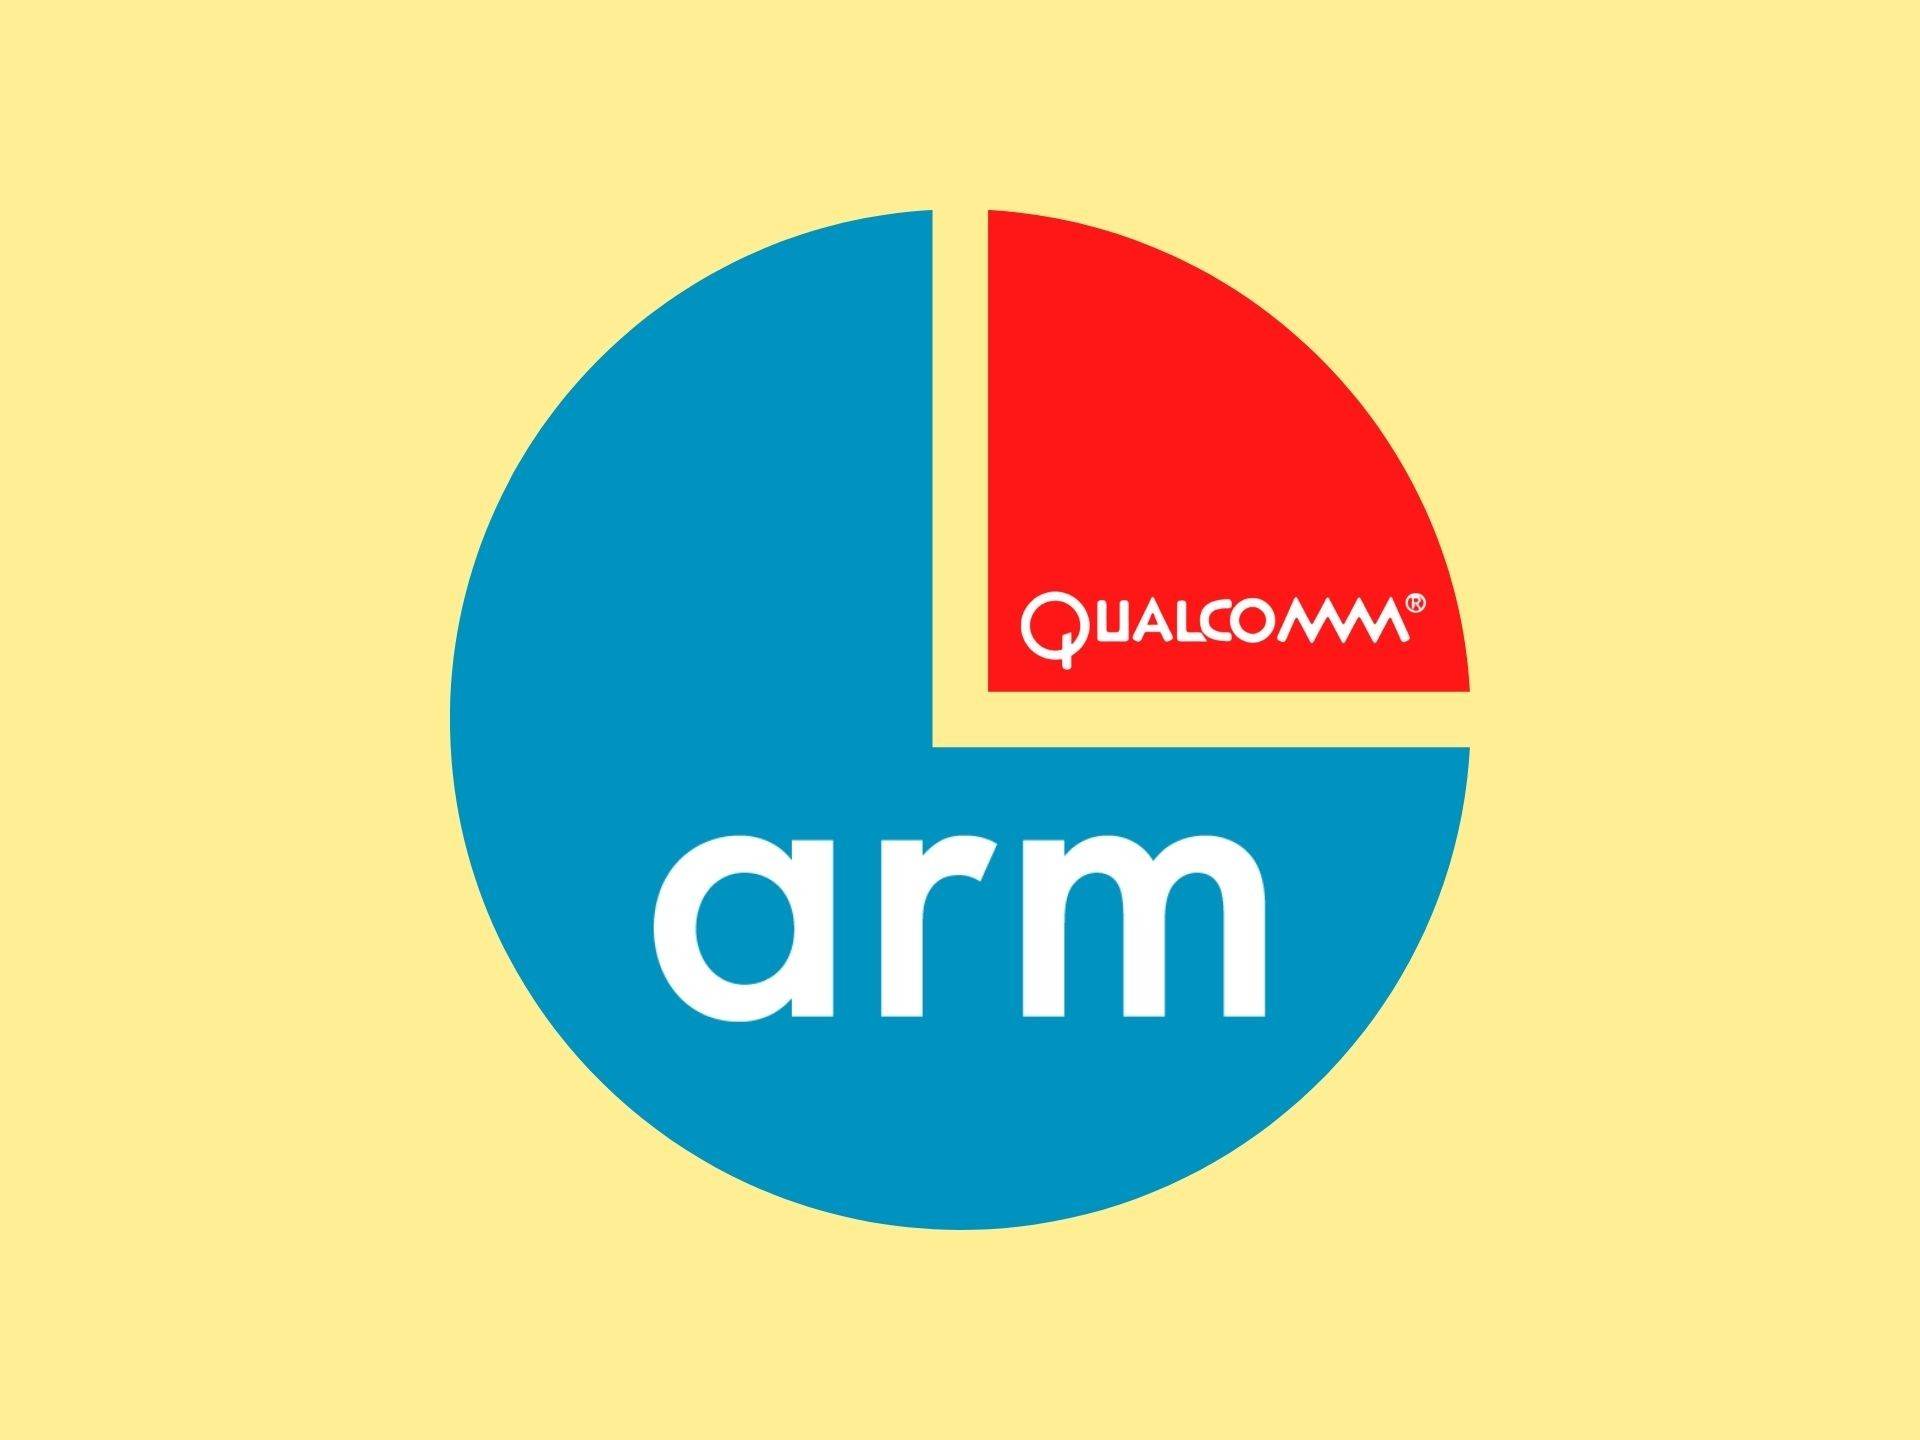 Qualcomm plans to acquire ARM